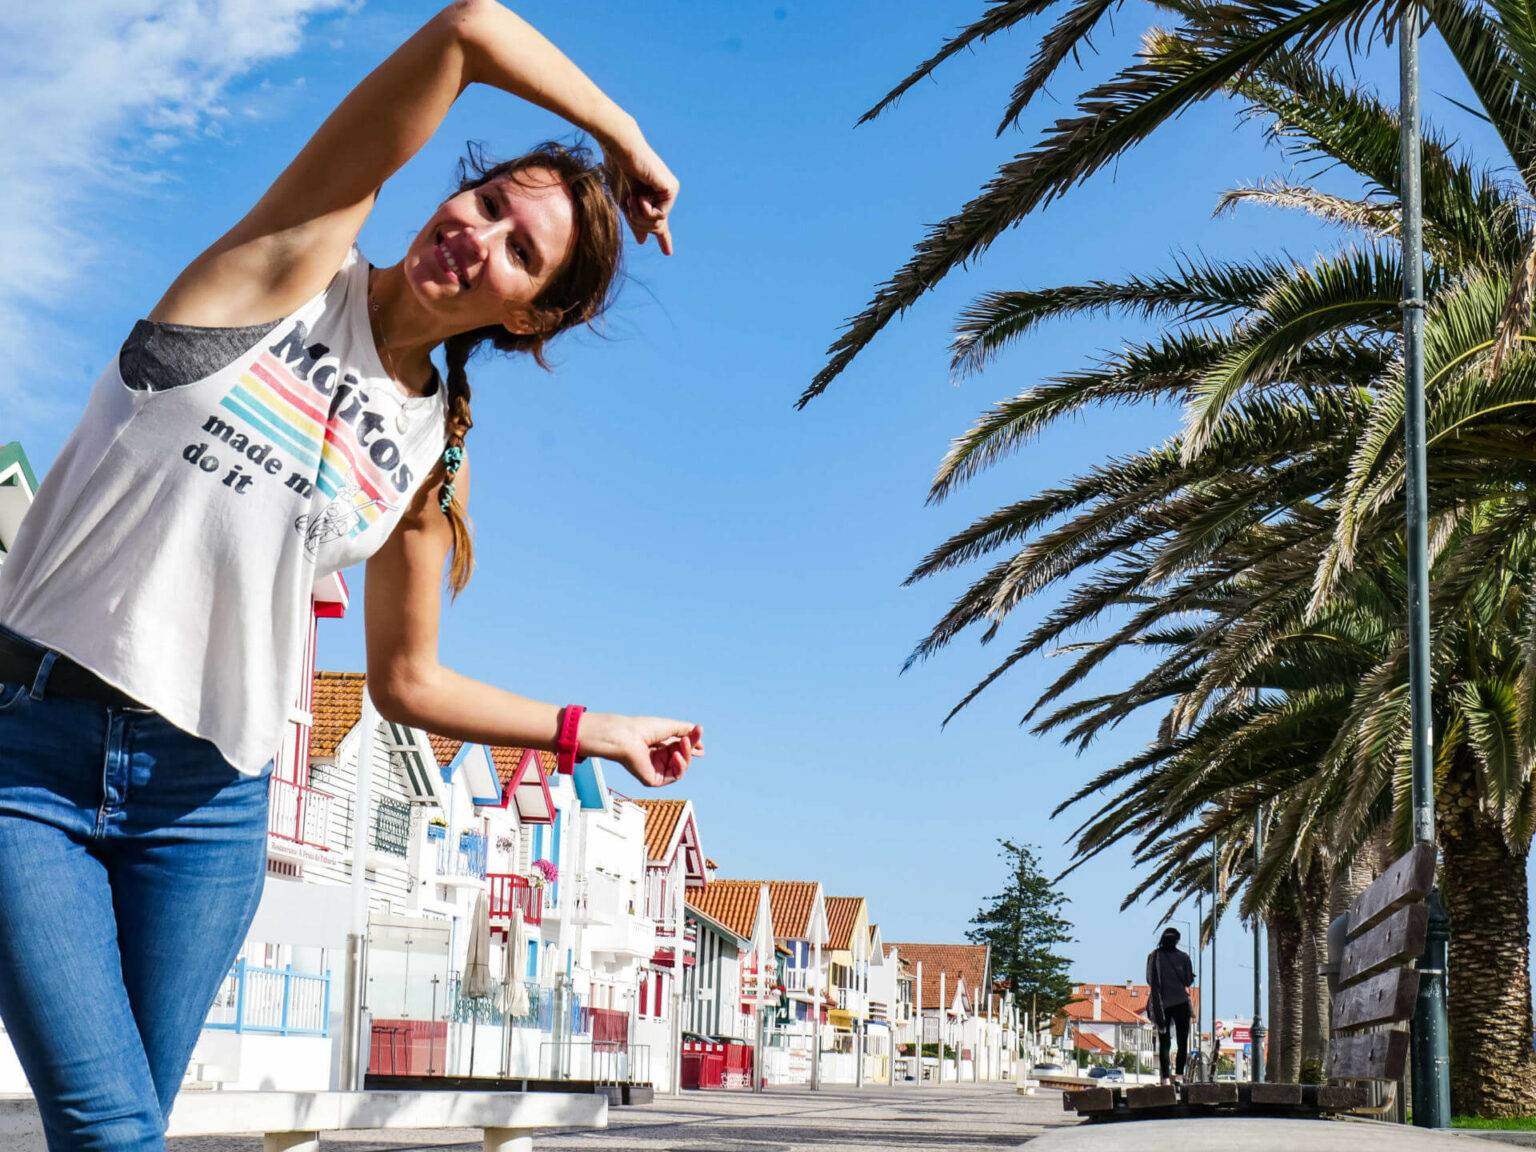 Reisebloggerin Anja Knorr lächelt vor einer bunten portugiesischen Häuserfassade und Palmen in die Kamera - das Zentrum Portugals eignet sich ideal zum Reisen allein.